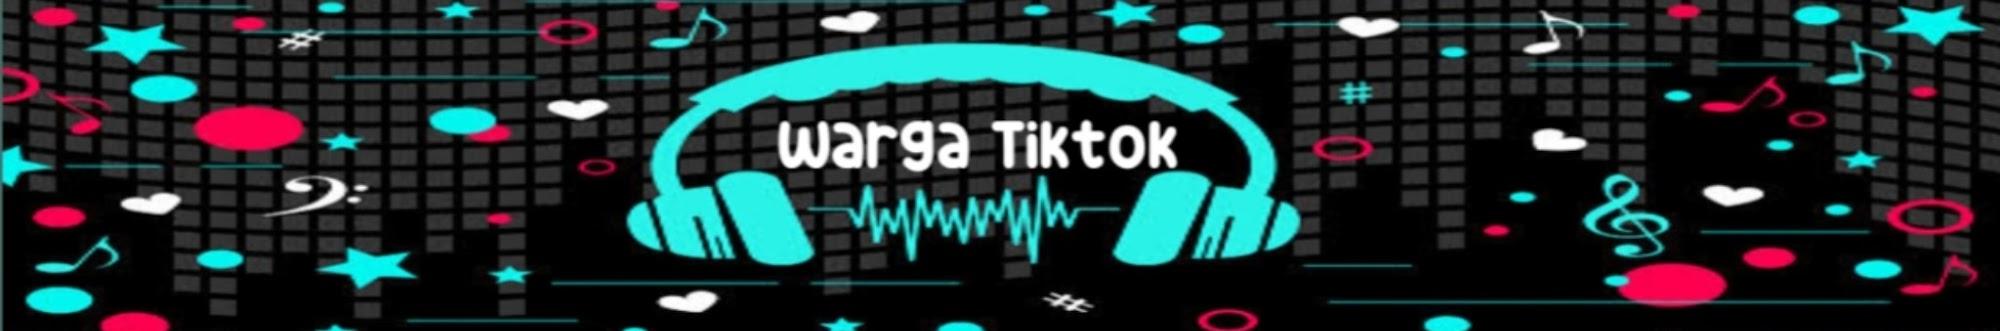 Warga_Tiktok+62